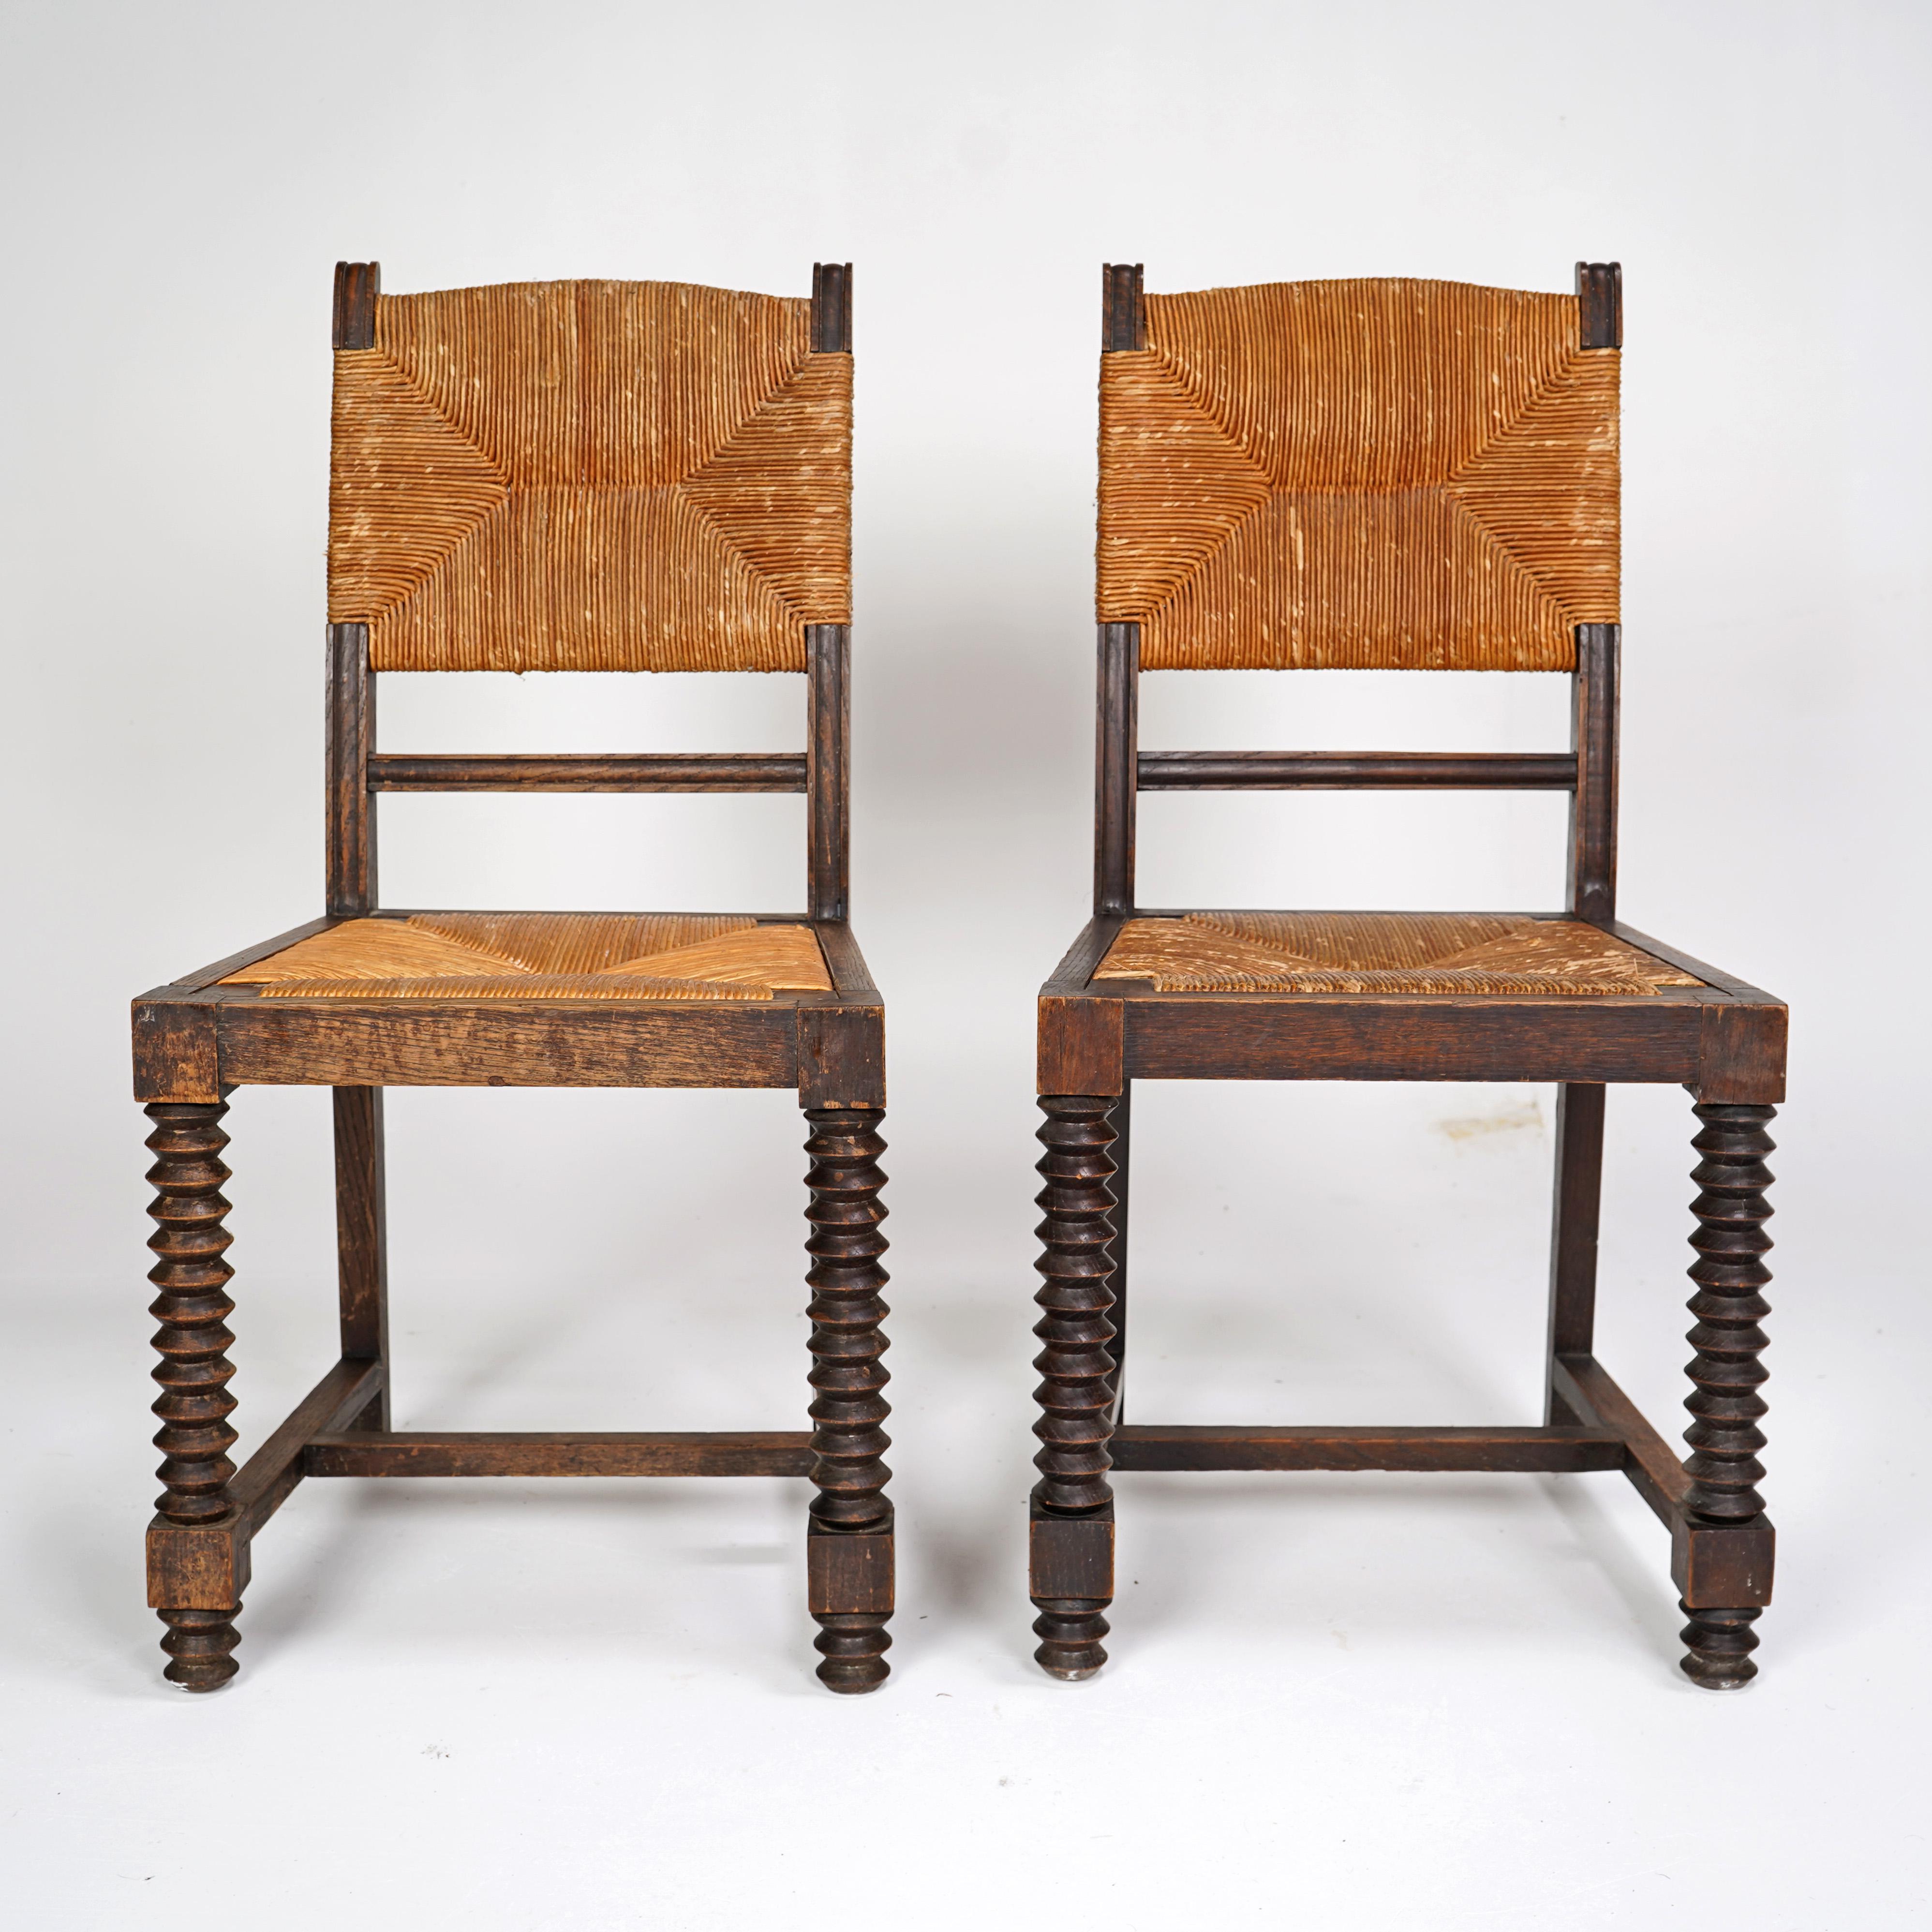  Ein Paar Stühle im Stil von Charles Dudouyt mit Sitz und Rückenlehne aus Binsen. Französisch ca. 1940er Jahre.

Abmessungen
 
Höhe - 90cm
Breite - 45cm
Tiefe - 42cm

Über uns  
Wir sind Stowaway London, ein kleines Online-Unternehmen, das eine